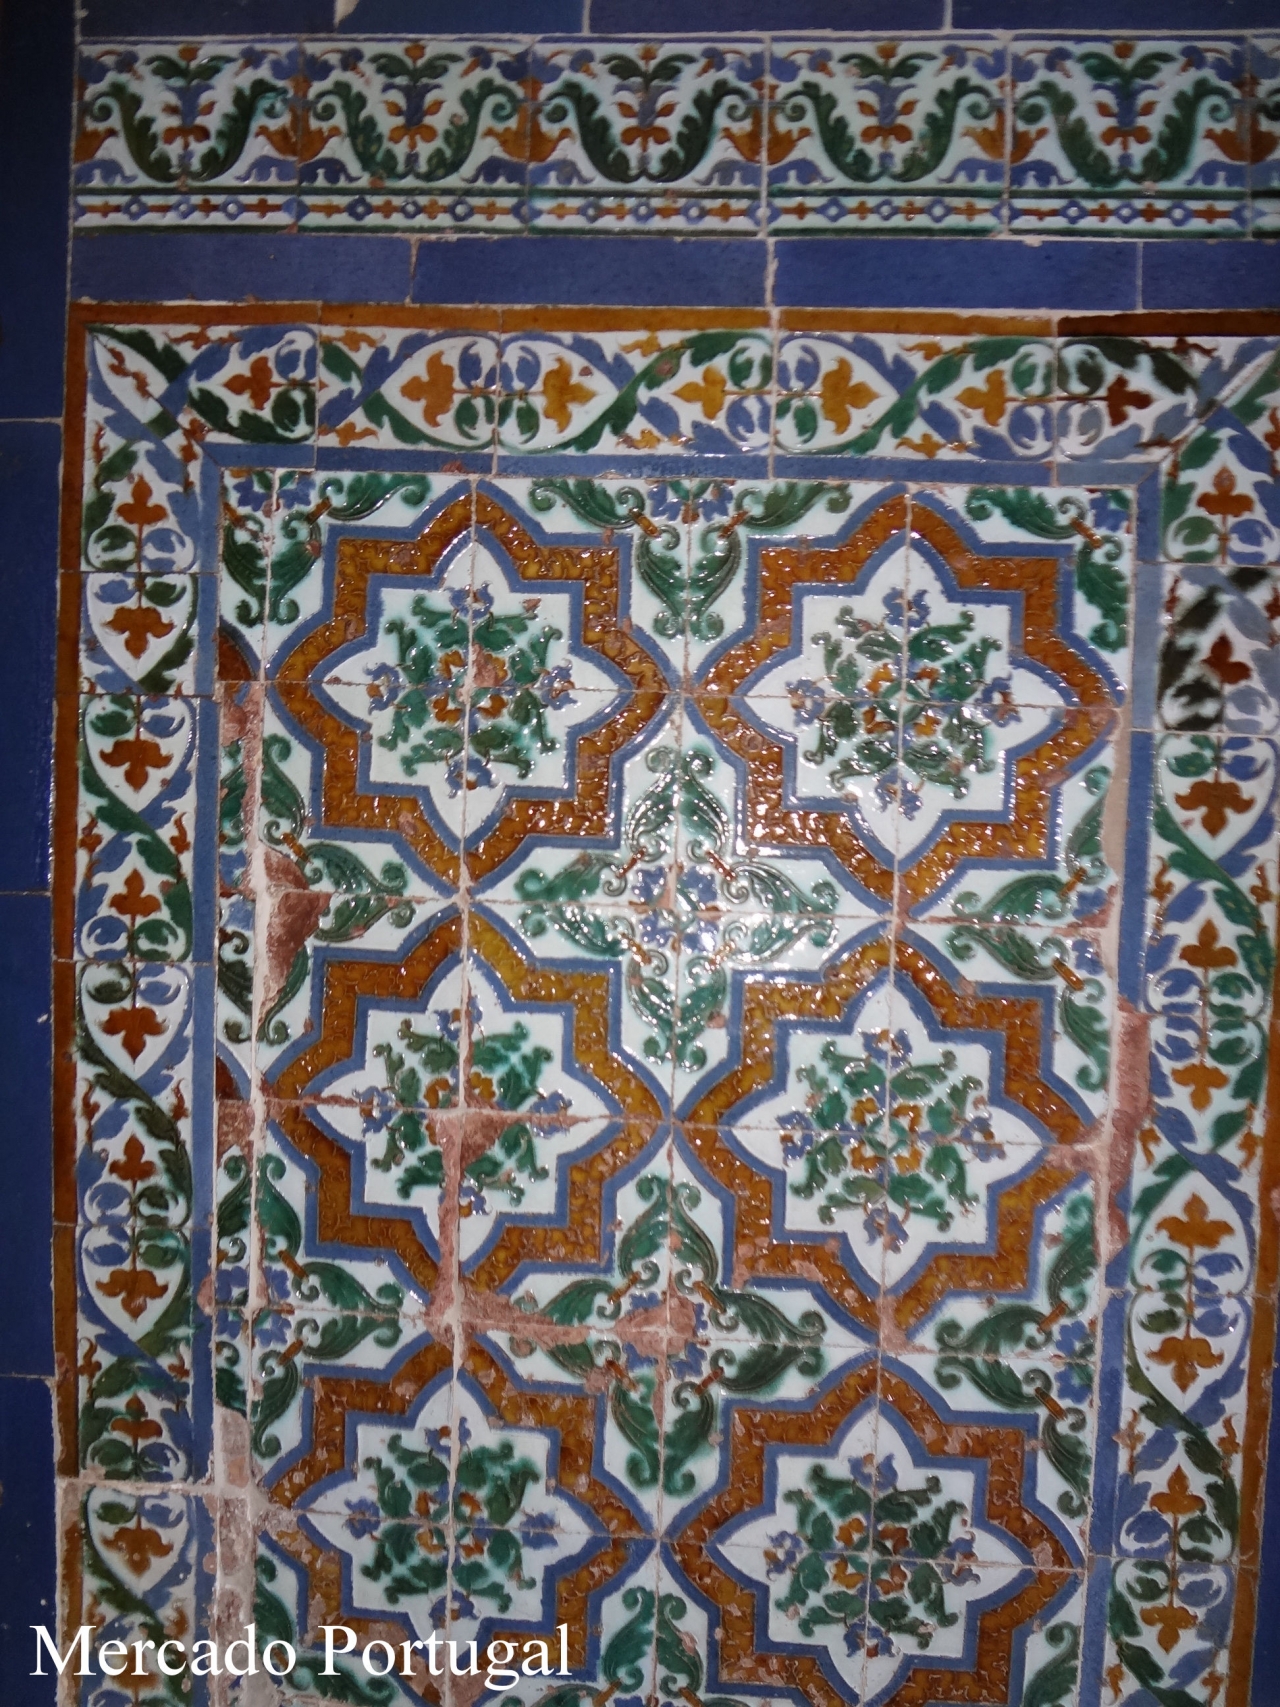 こちらはアルハンブラ宮殿内のタイル。アズレージョを思わせます。